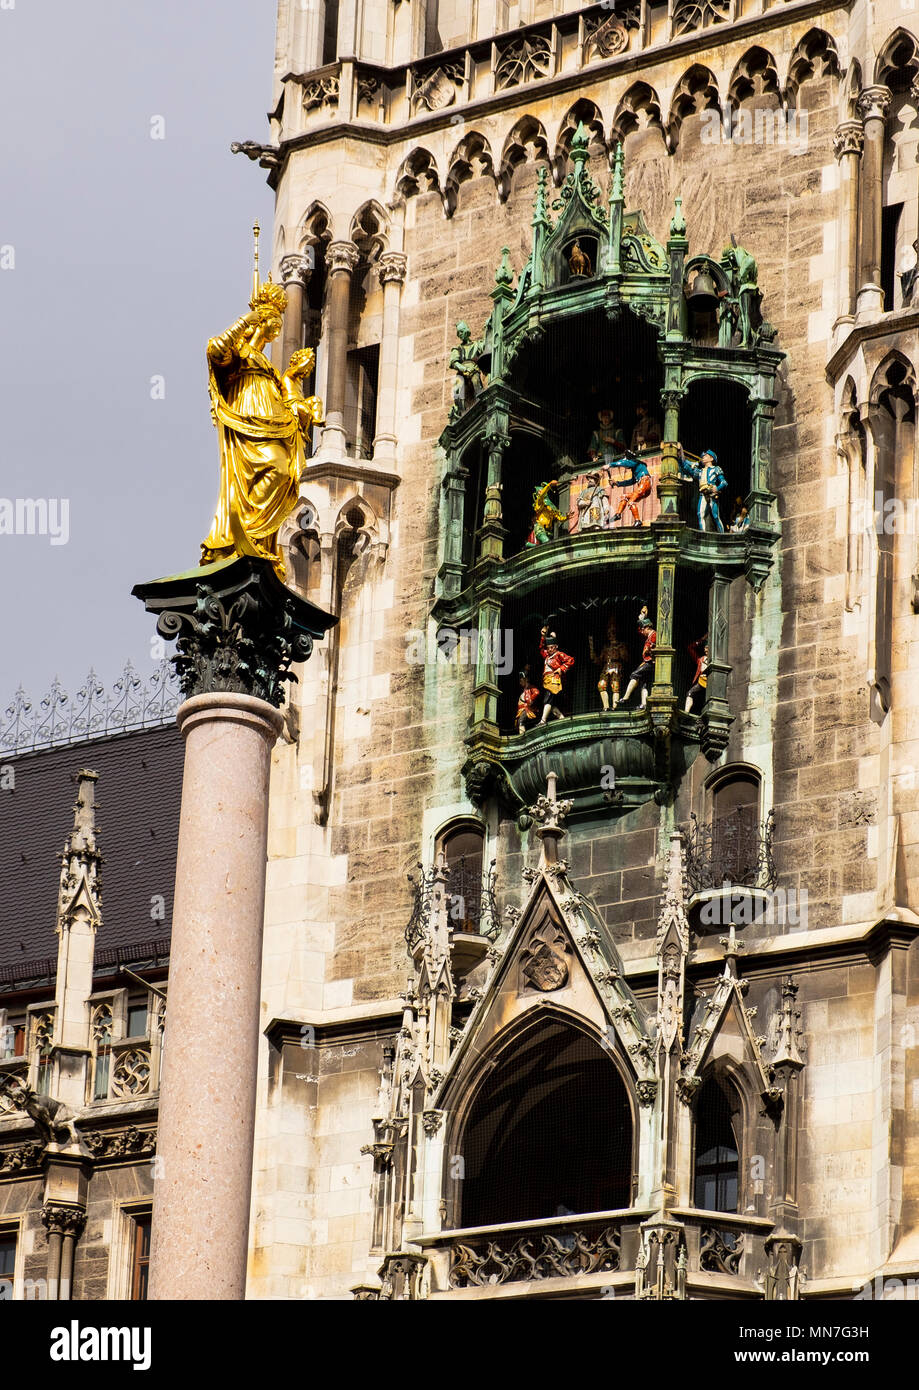 El Glockenspiel en la torre del reloj del ayuntamiento, Rathaus, Munich y en primer plano, en el centro de la Marienplatz, la columna Mariensäule Foto de stock